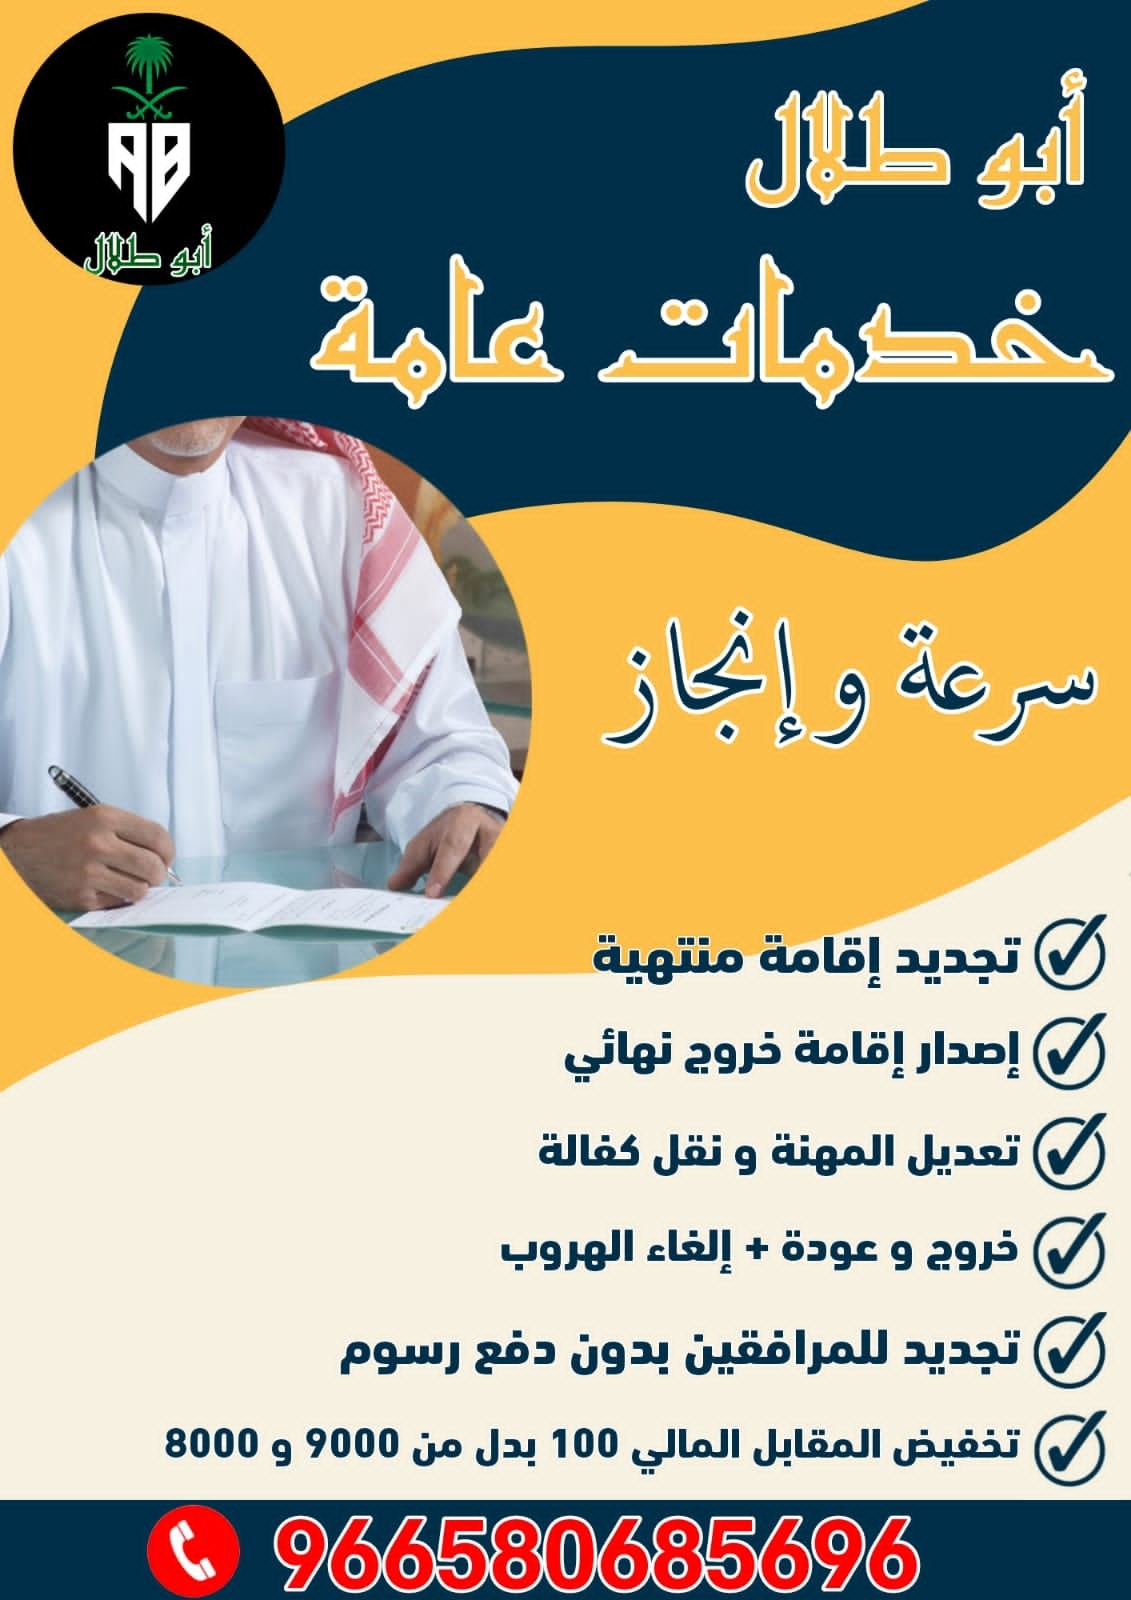 وكالة ابو طلال للخدمات العامه في الممكله العربية السعودية